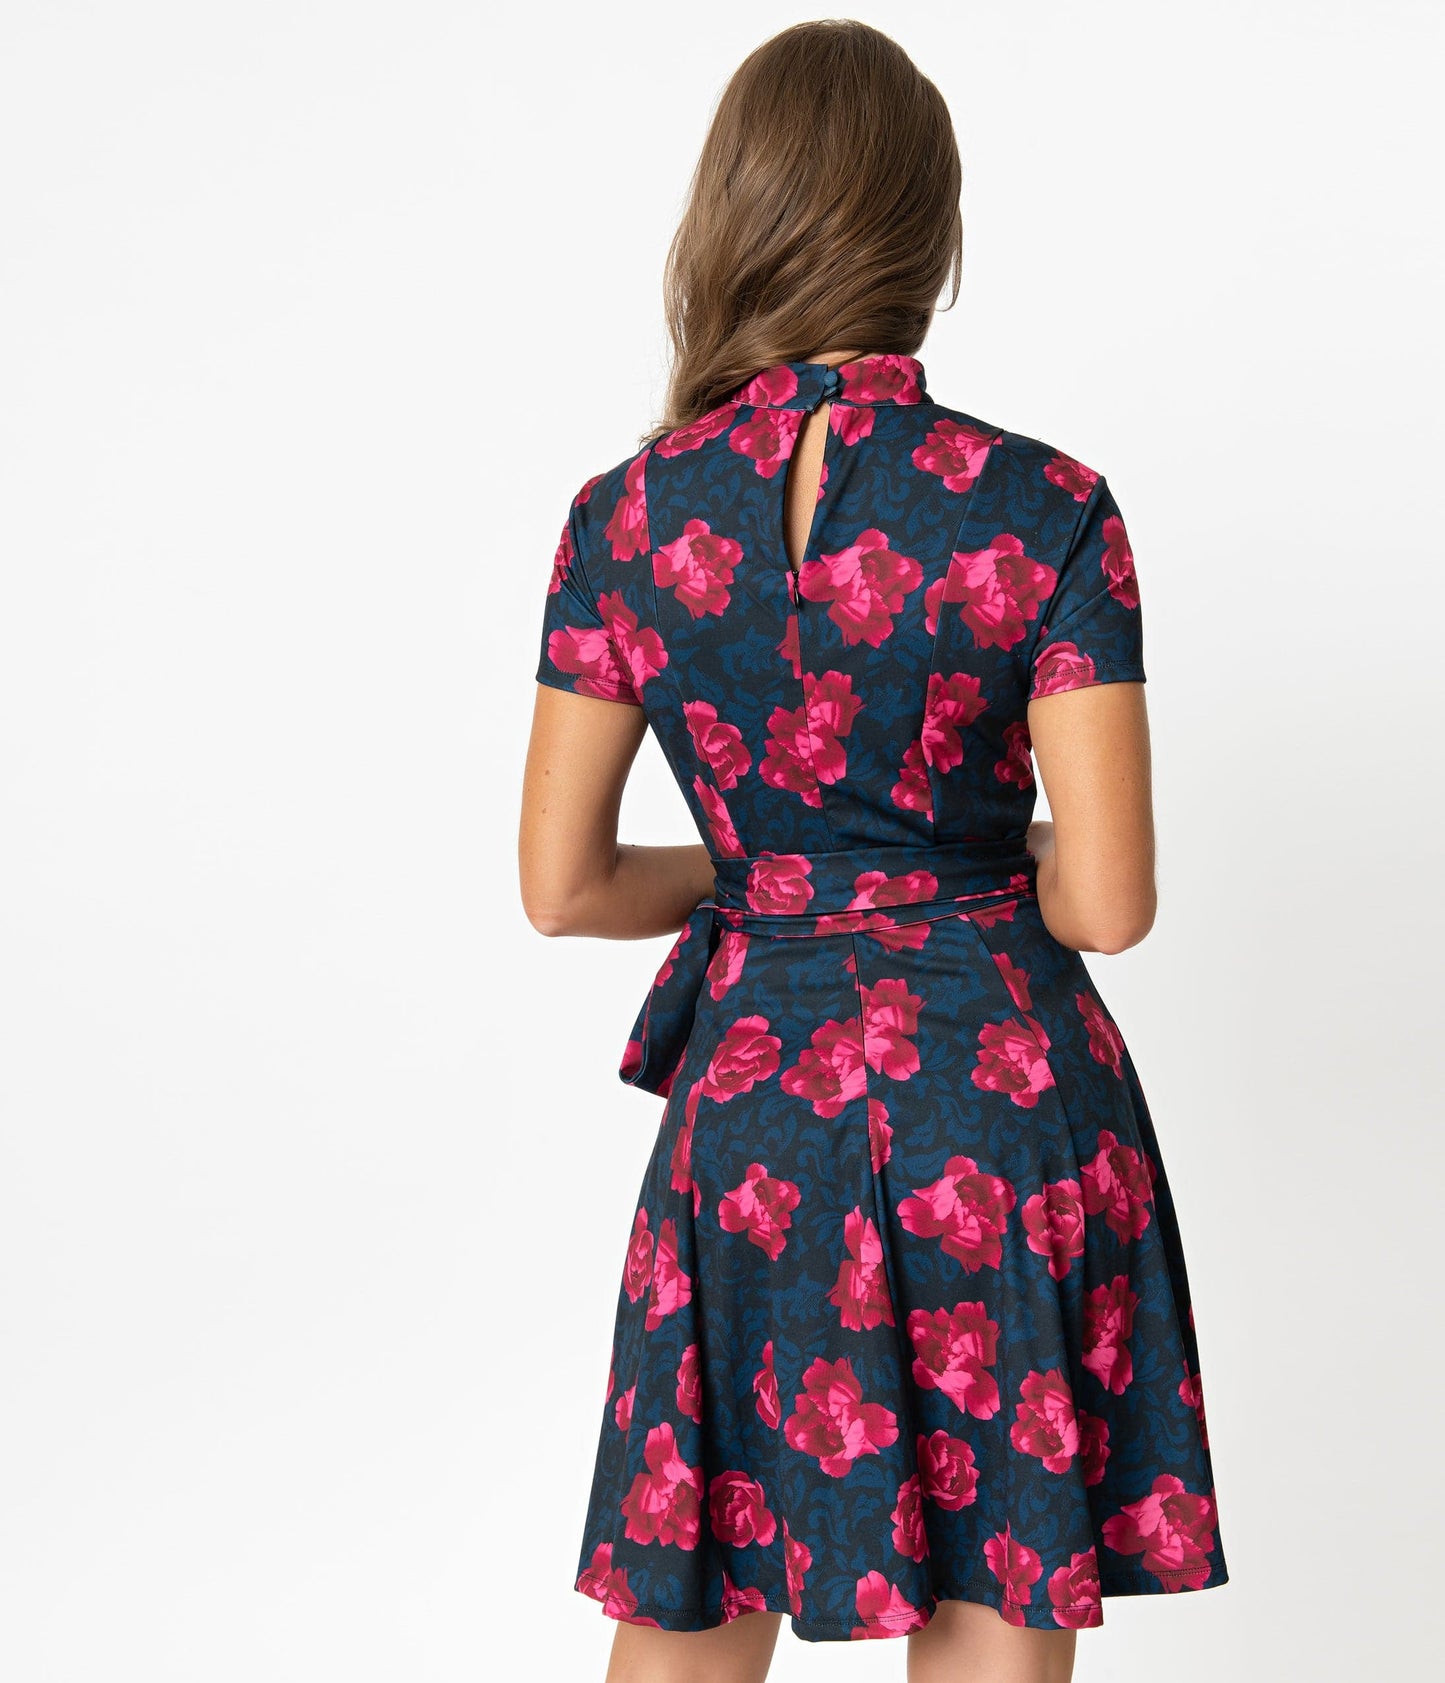 Unique Vintage 1960s Style Black & Pink Floral Print Bancroft Fit & Flare Dress